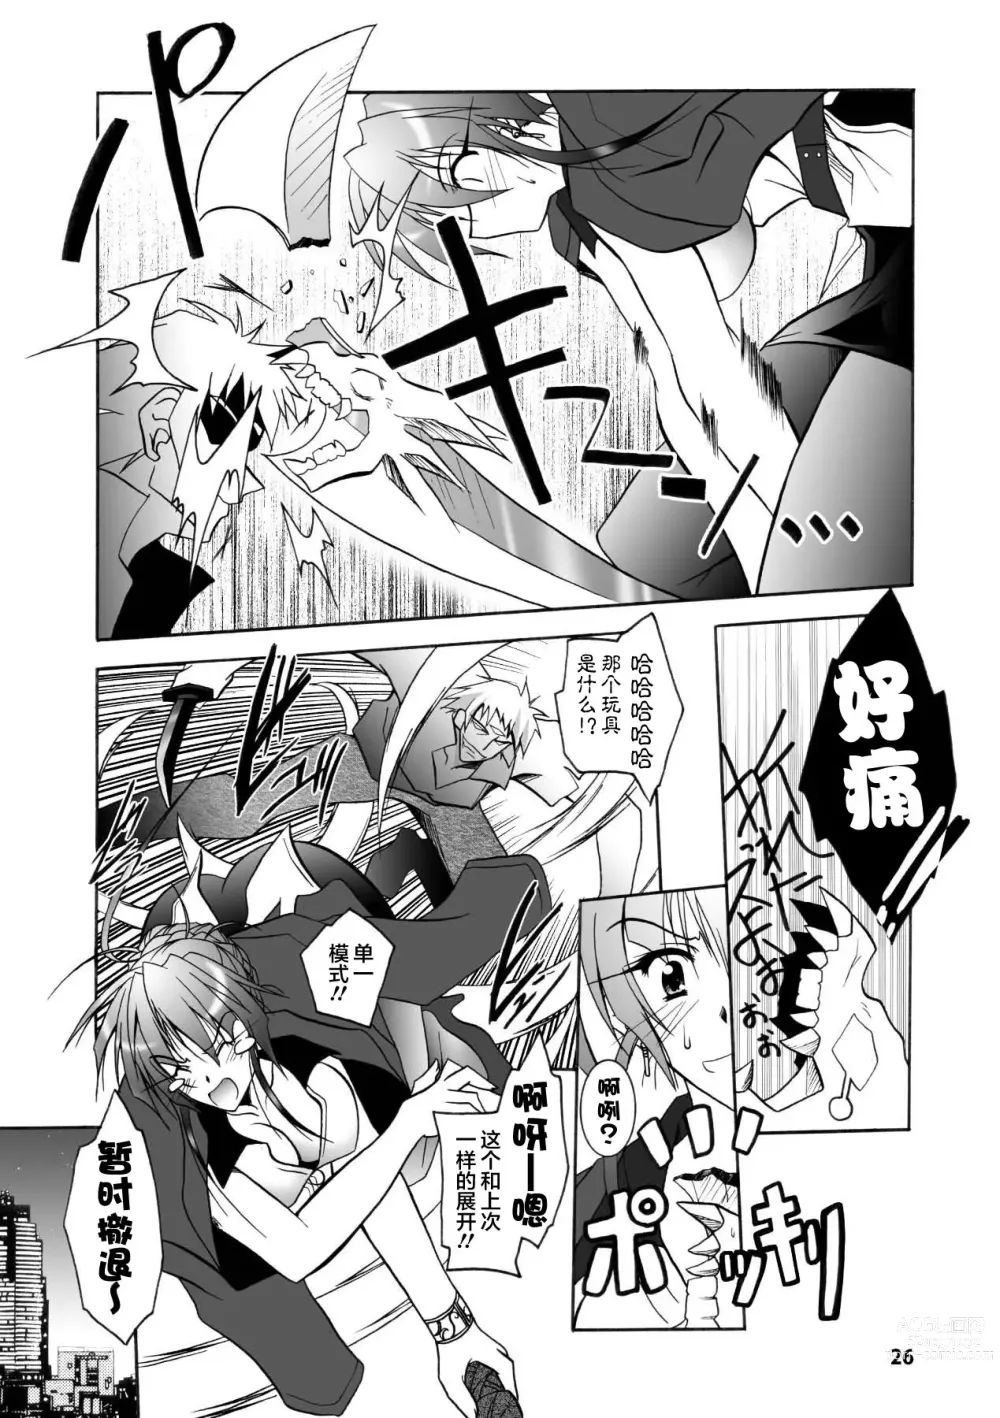 Page 26 of manga Matantei Toudou Shizuka no Inyou Jikenbo